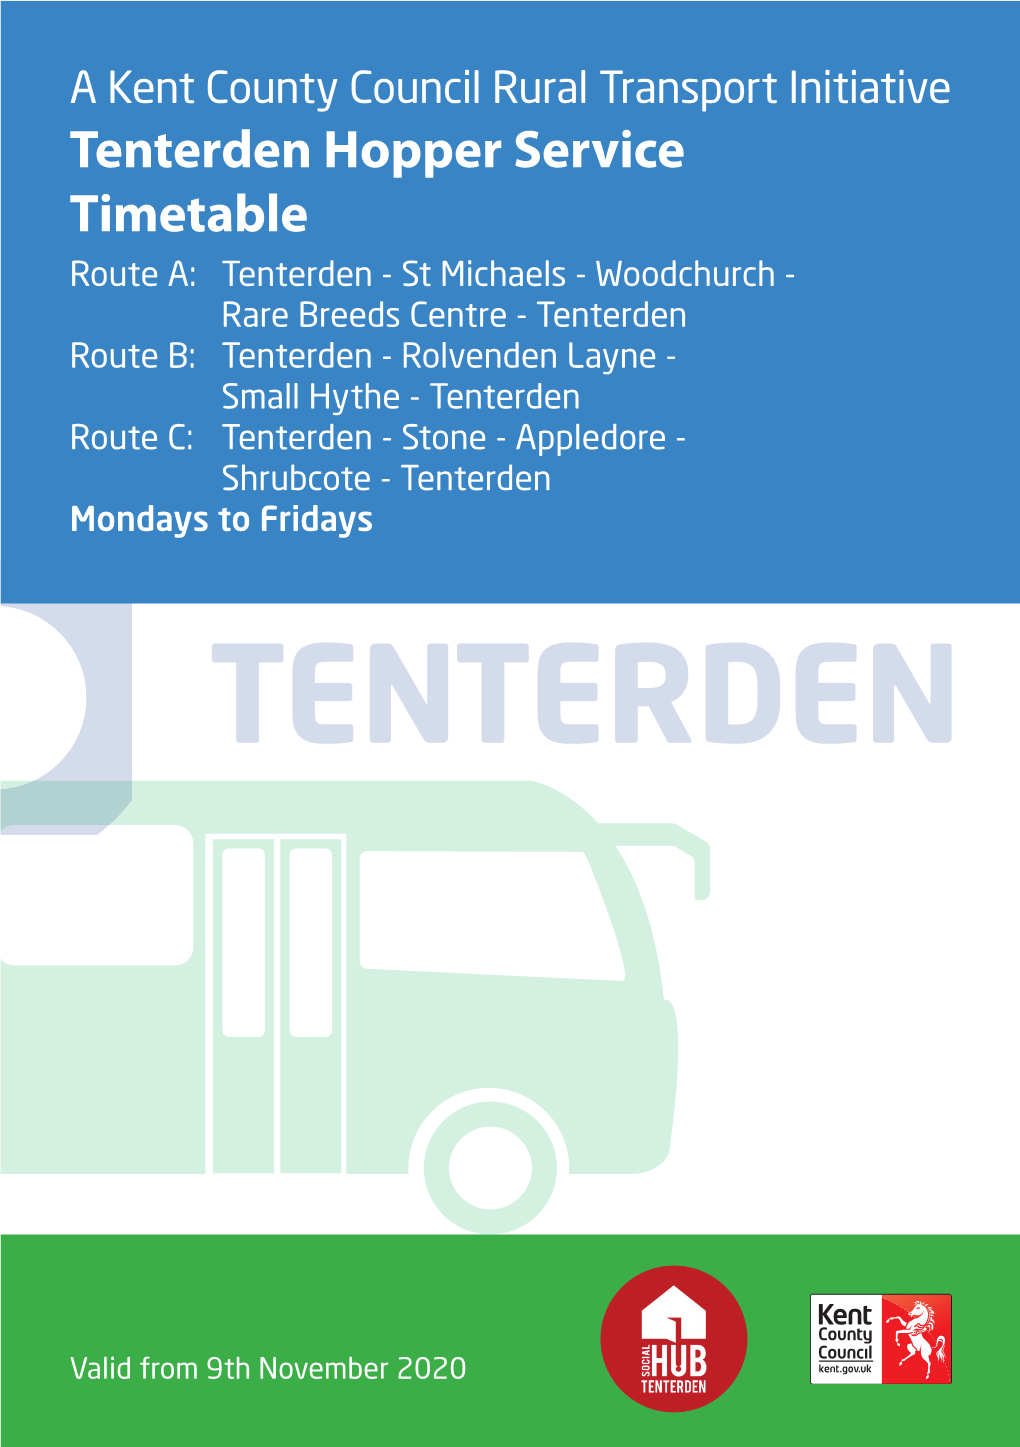 Tenterden Hopper Service Timetable